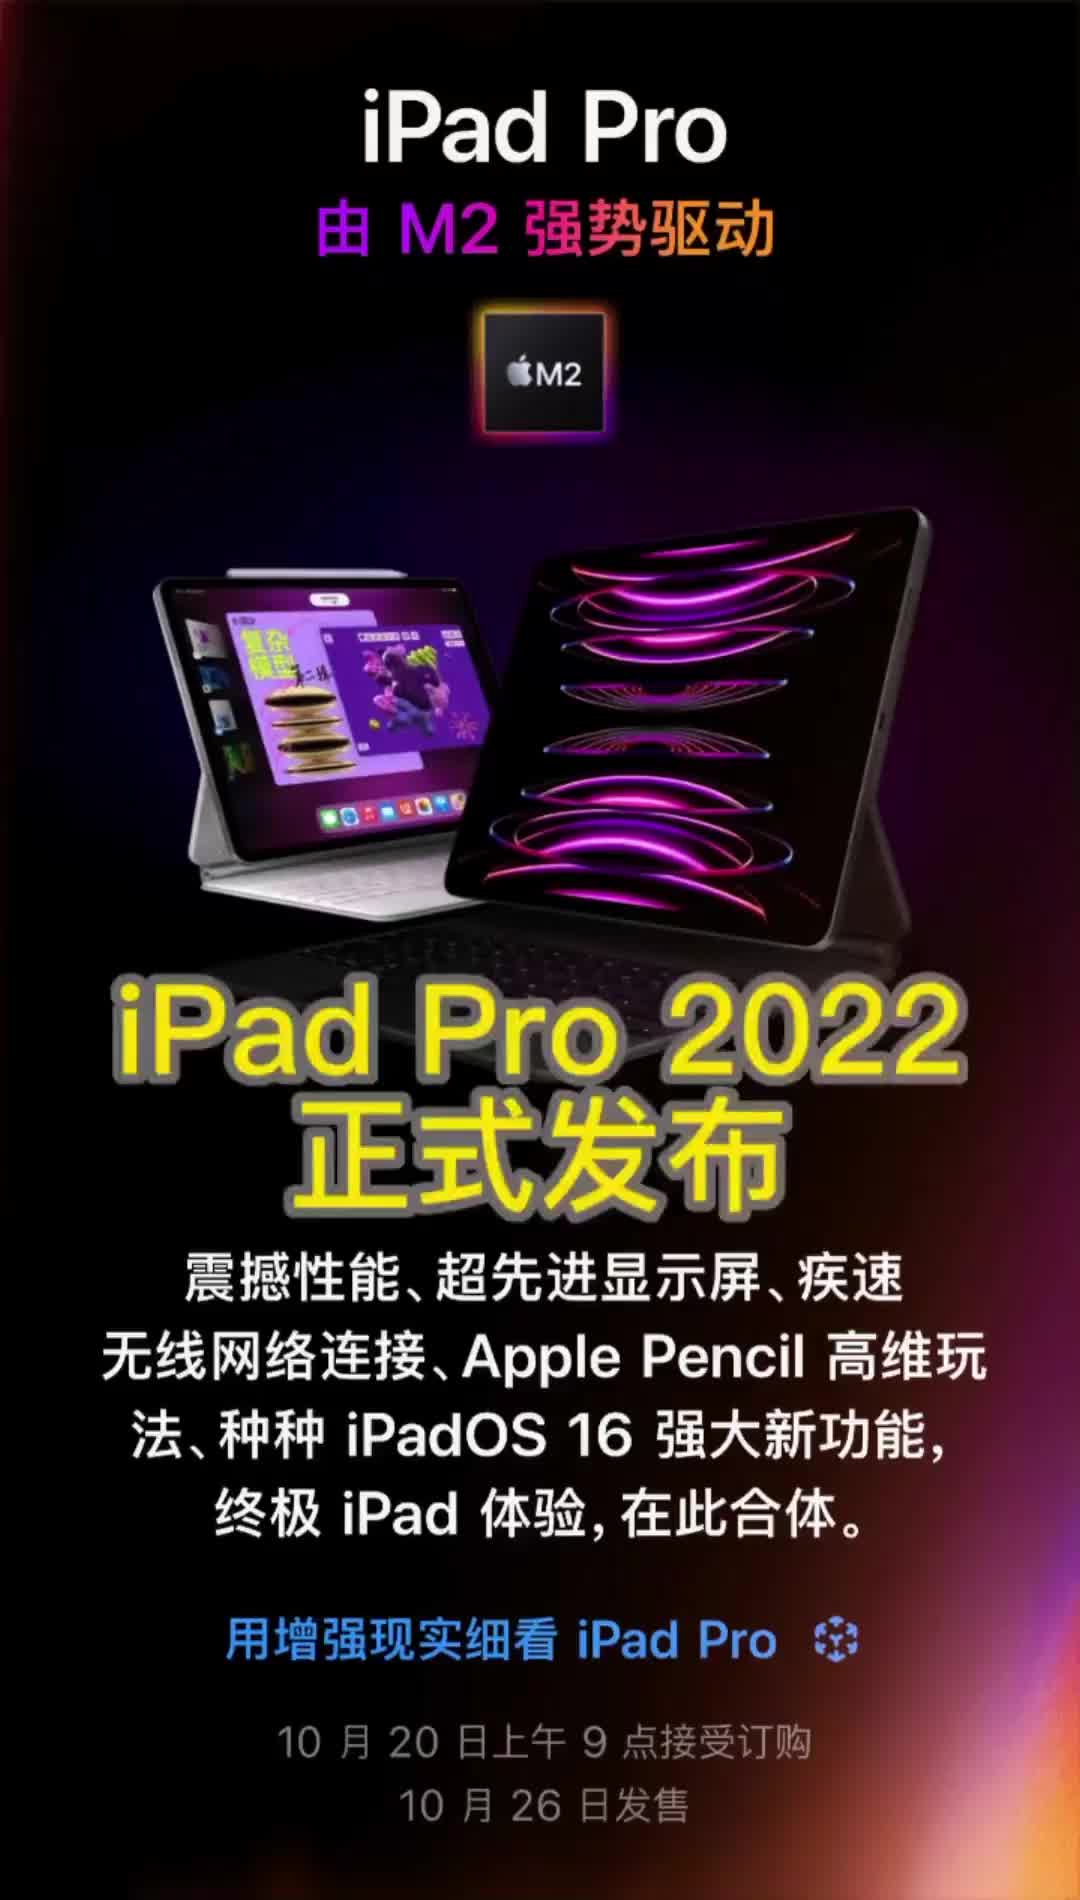 iPad Pro2022正式发布 Pad Pro 正式获得更新，搭载 M2 处理器#芯片 